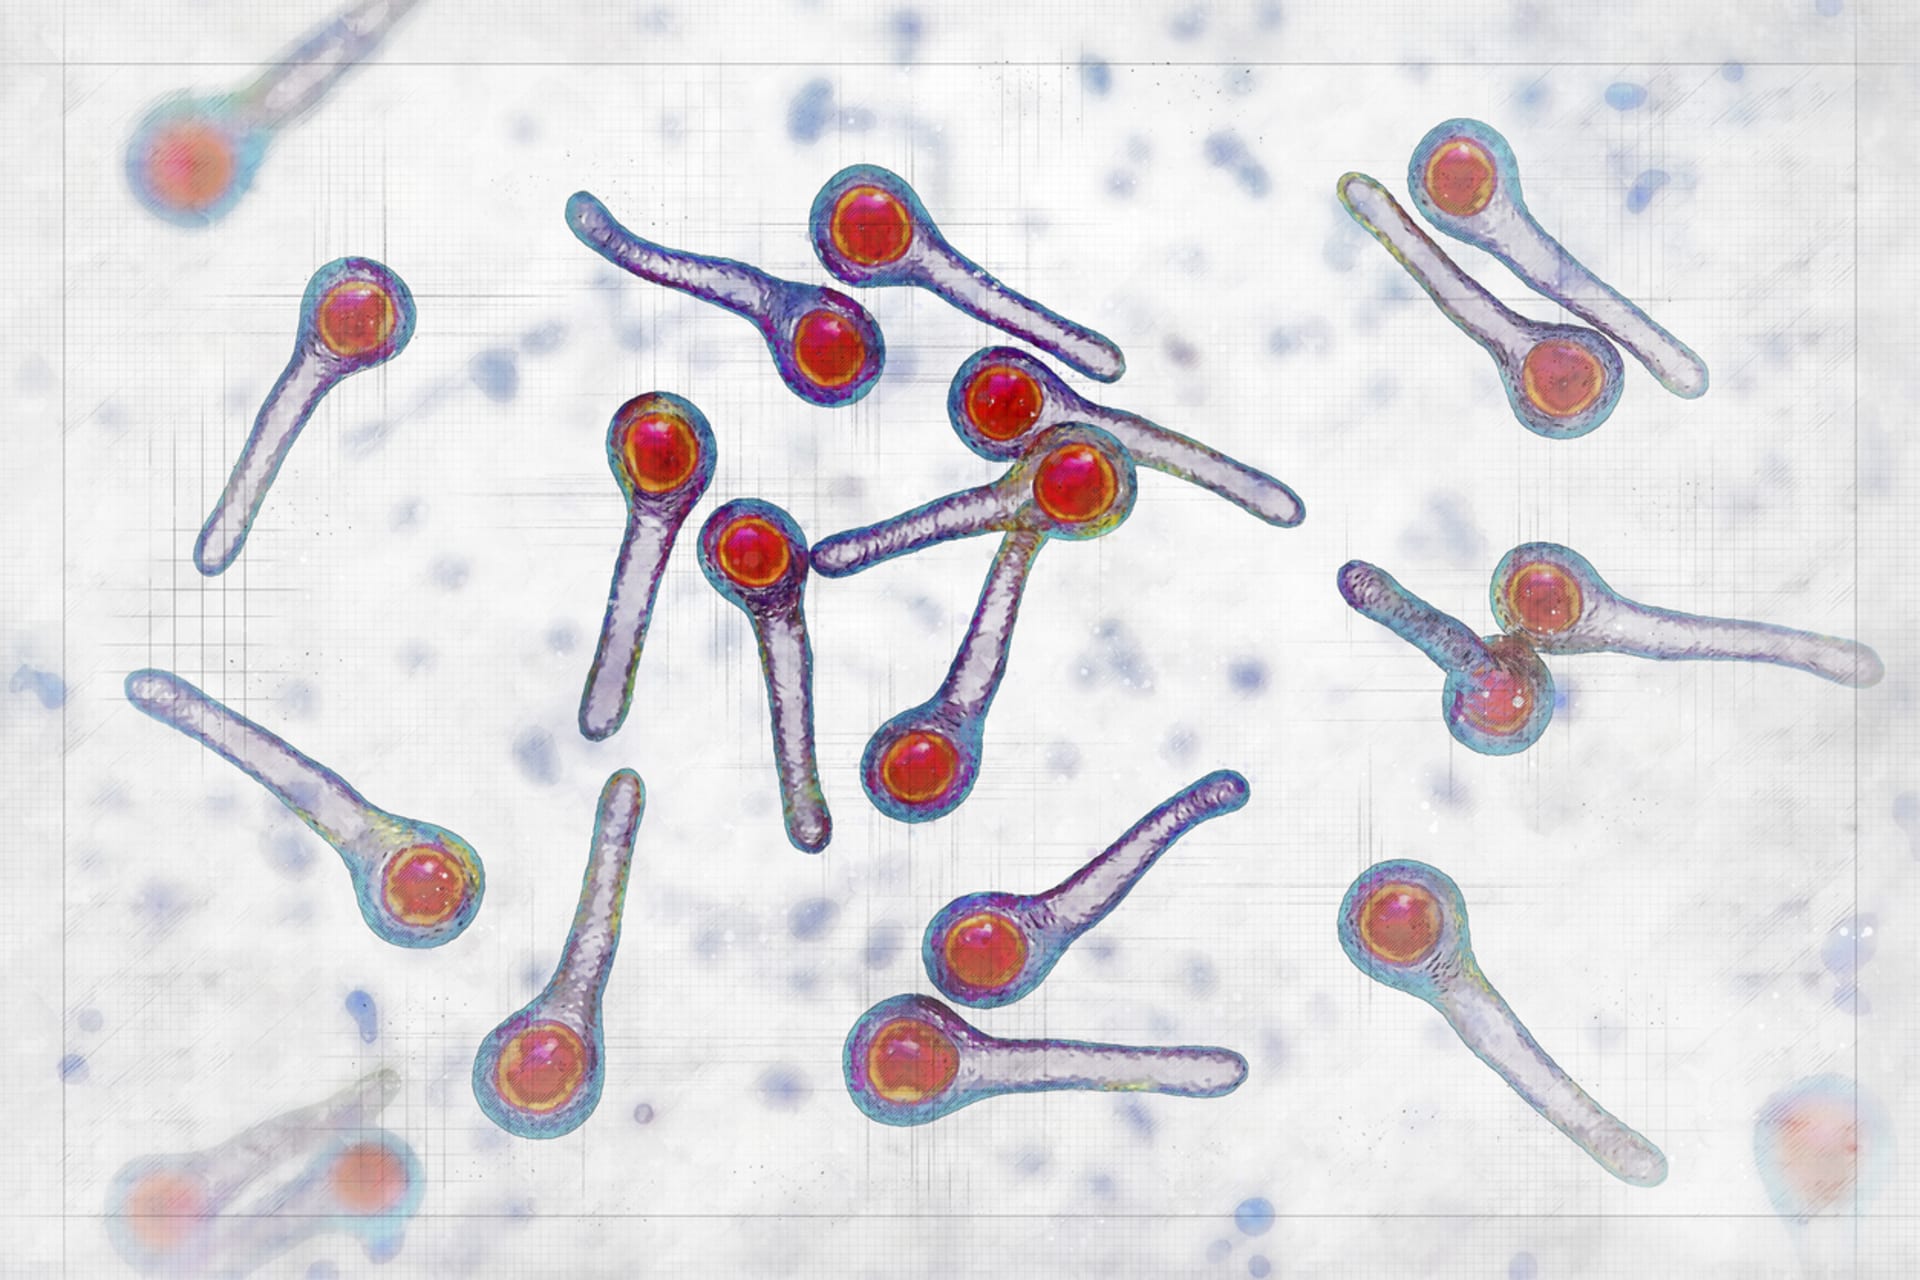 Clostridium tetani 